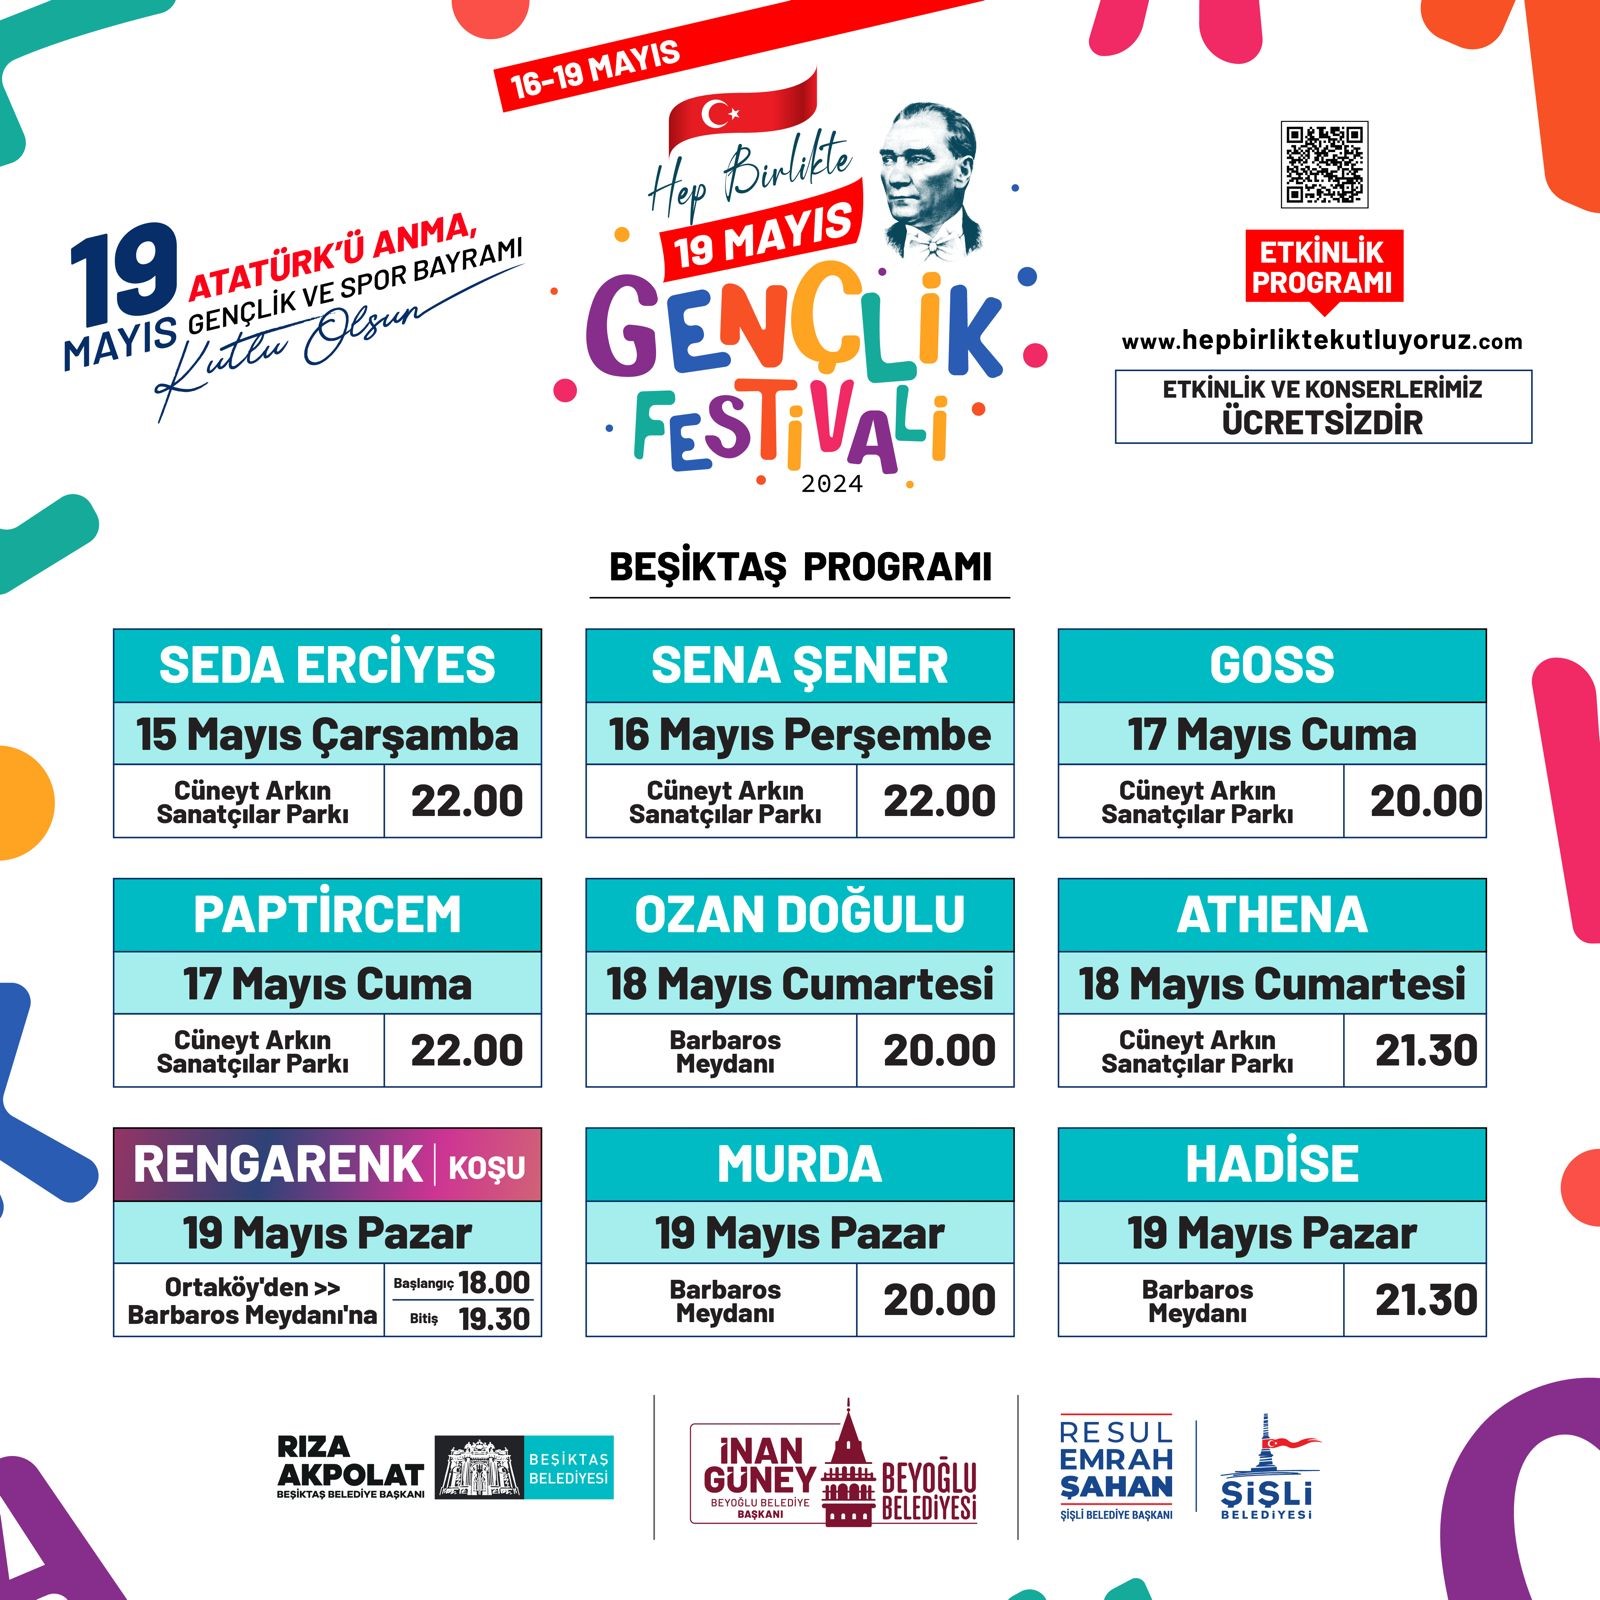 Beşiktaş’ta gençlik festivali etkinlikleri